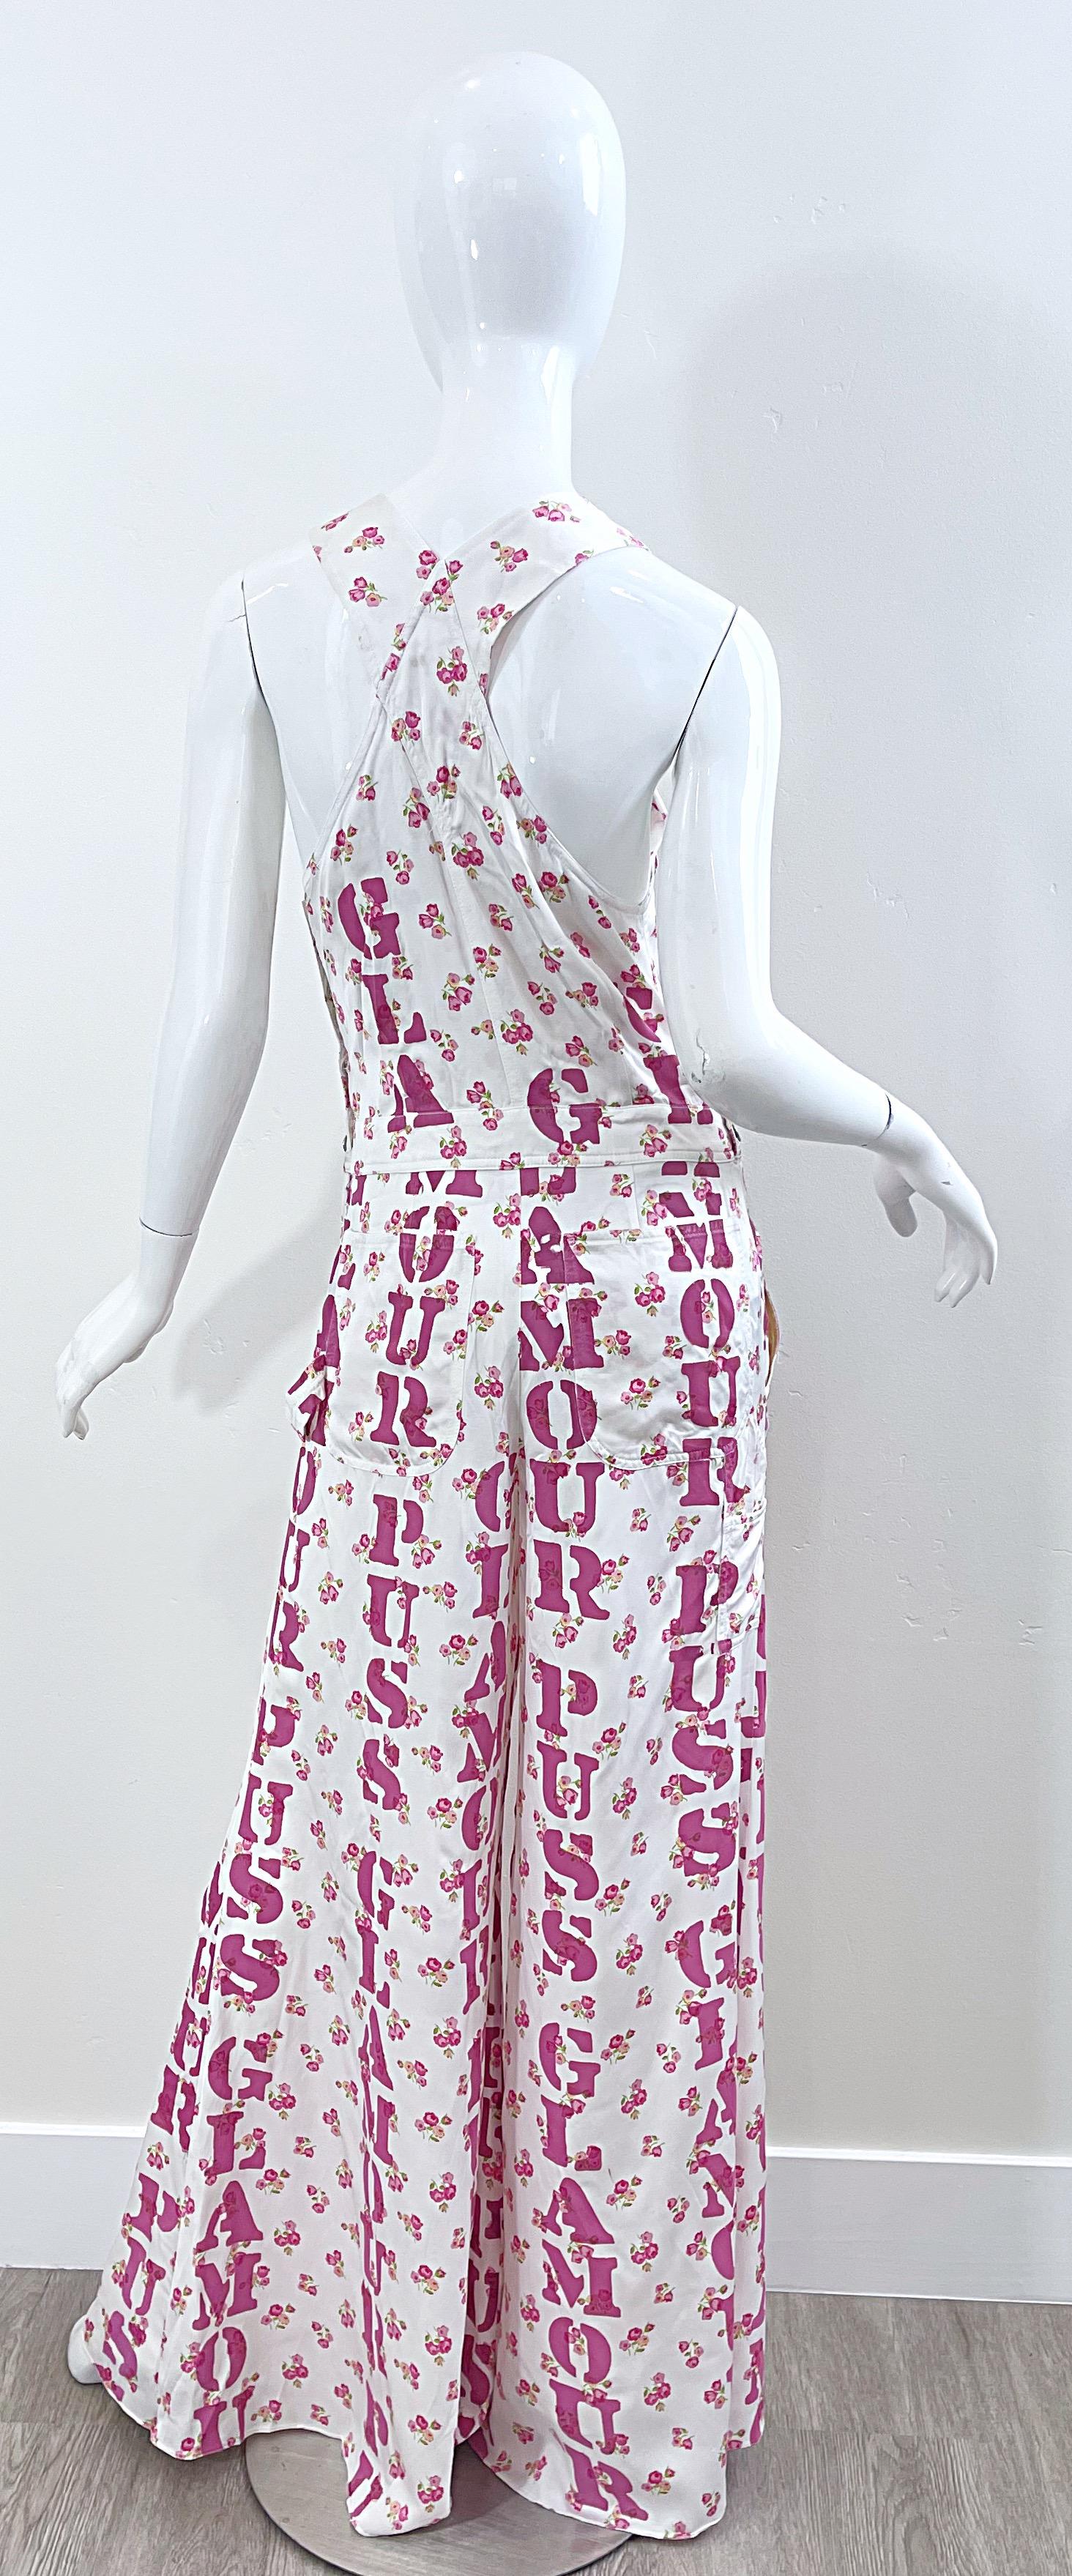 Moschino Couture Resort 2020 Größe 8 Glamour Puss Overalls mit Blumendruck in Übergröße 12